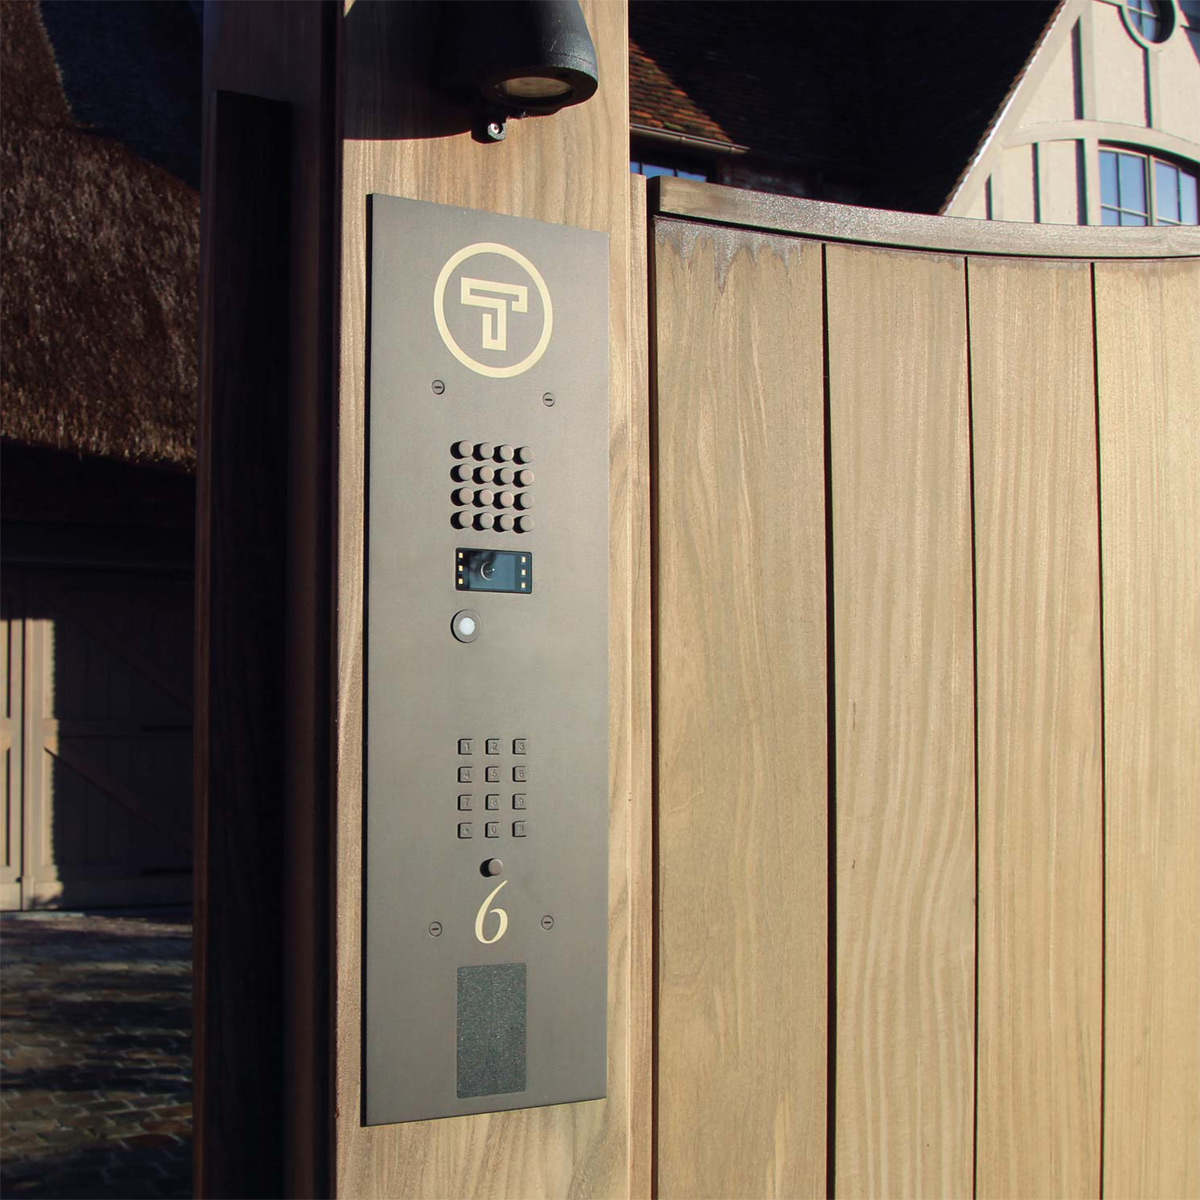 Door phone design outdoor stations from Fasttel